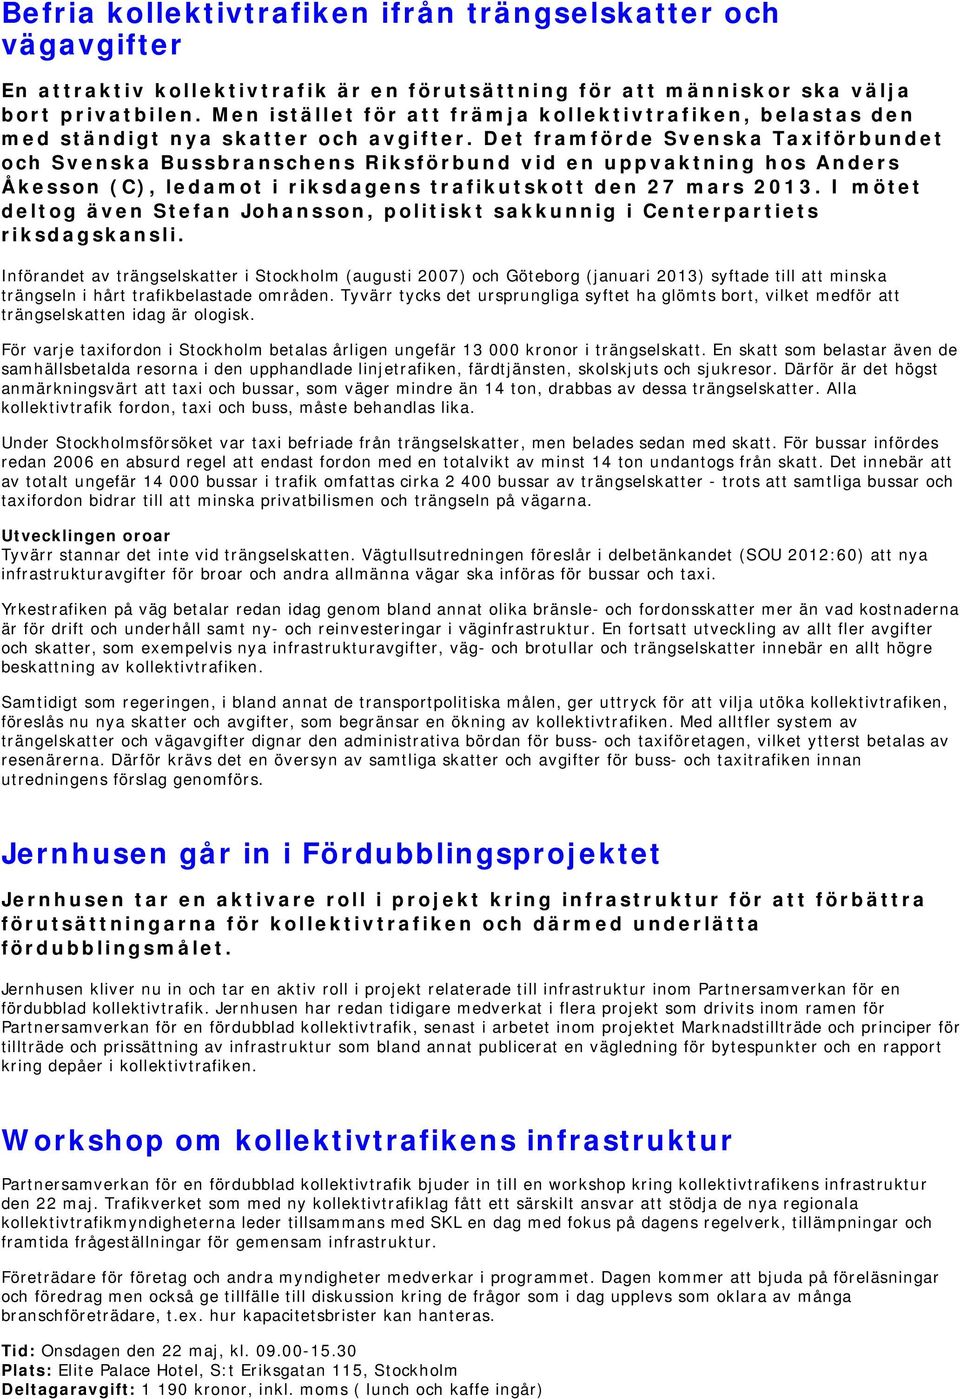 Det framförde Svenska Taxiförbundet och Svenska Bussbranschens Riksförbund vid en uppvaktning hos Anders Åkesson (C), ledamot i riksdagens trafikutskott den 27 mars 2013.